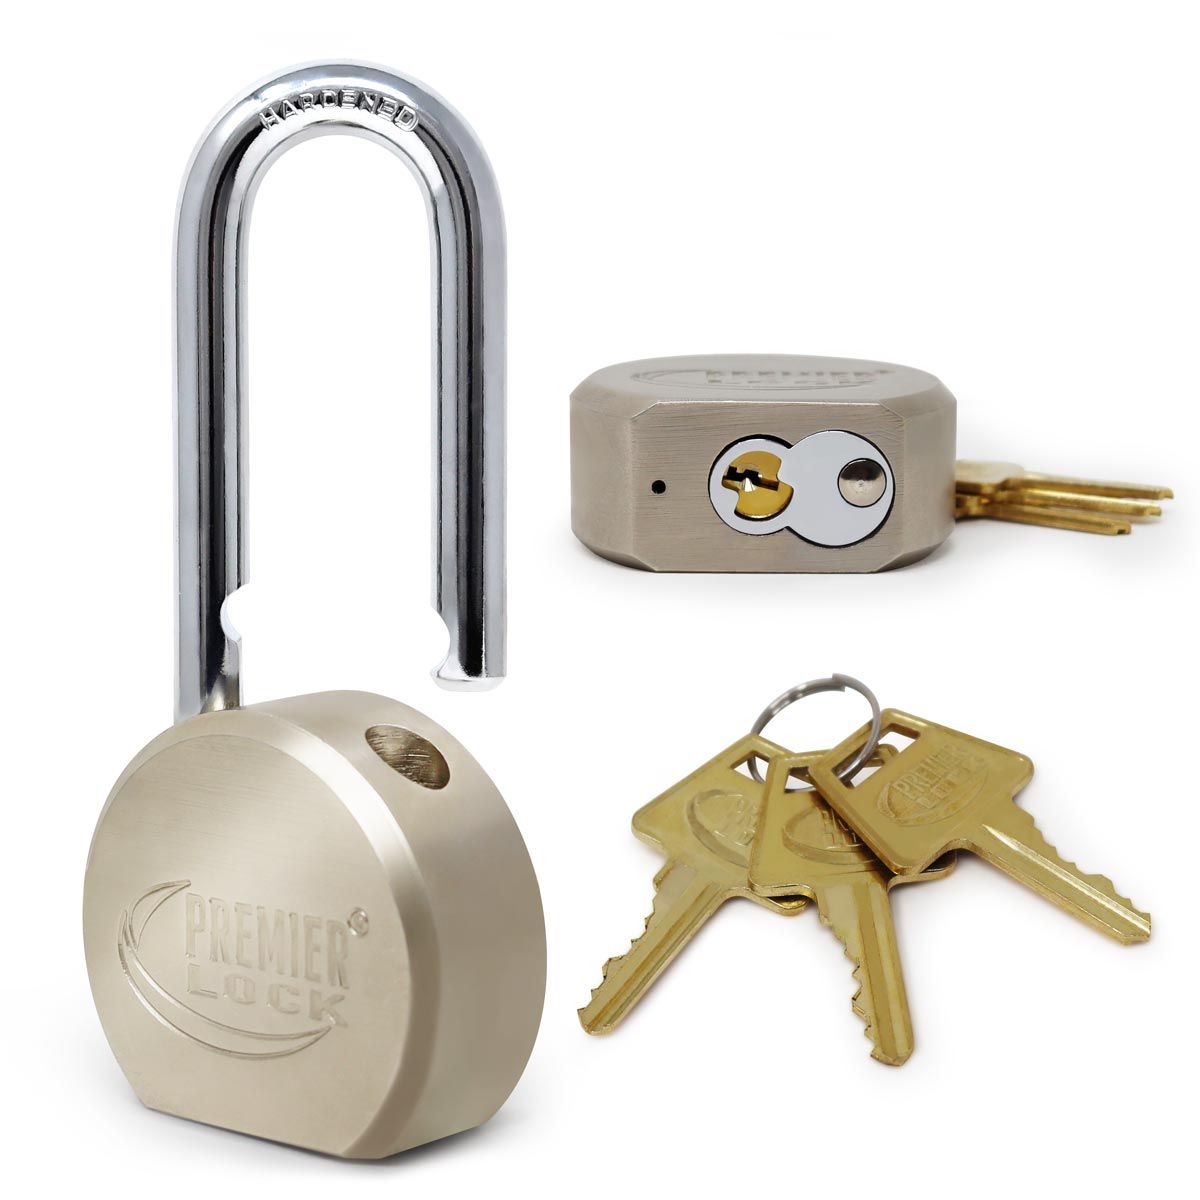 gap02-solid-steel-commercial-gate-keyed-padlock-5